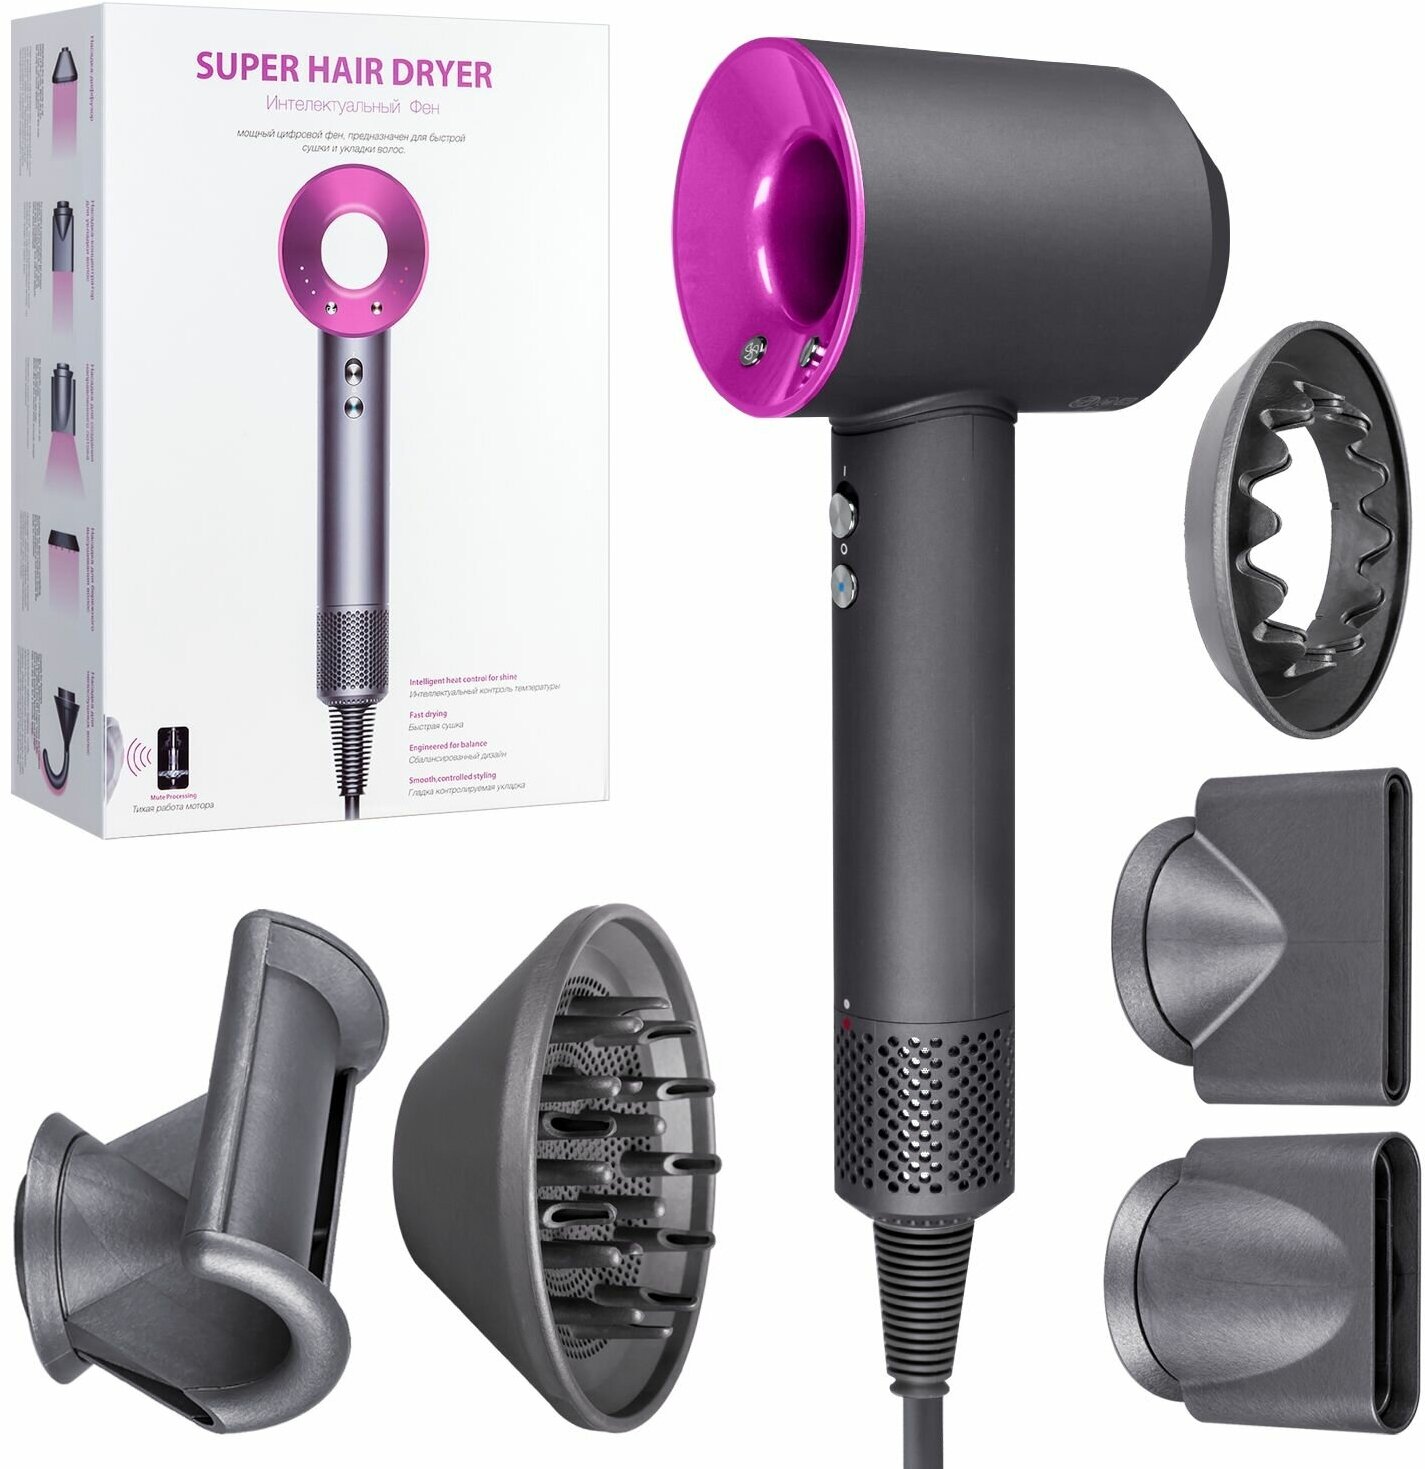 Фен для волос Super Hair Dryer профессиональный / Стайлер для укладки / Набор для укладки волос, 5 насадок